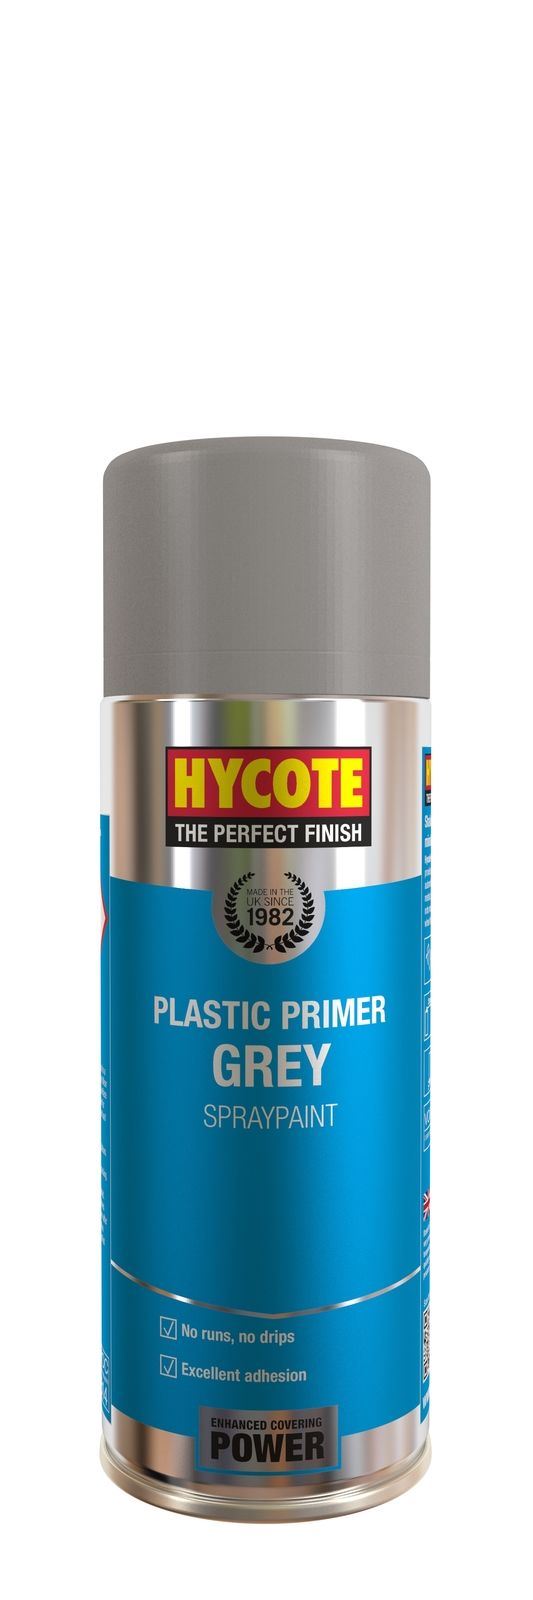 Hycote Grey Plastic Primer - 400ml